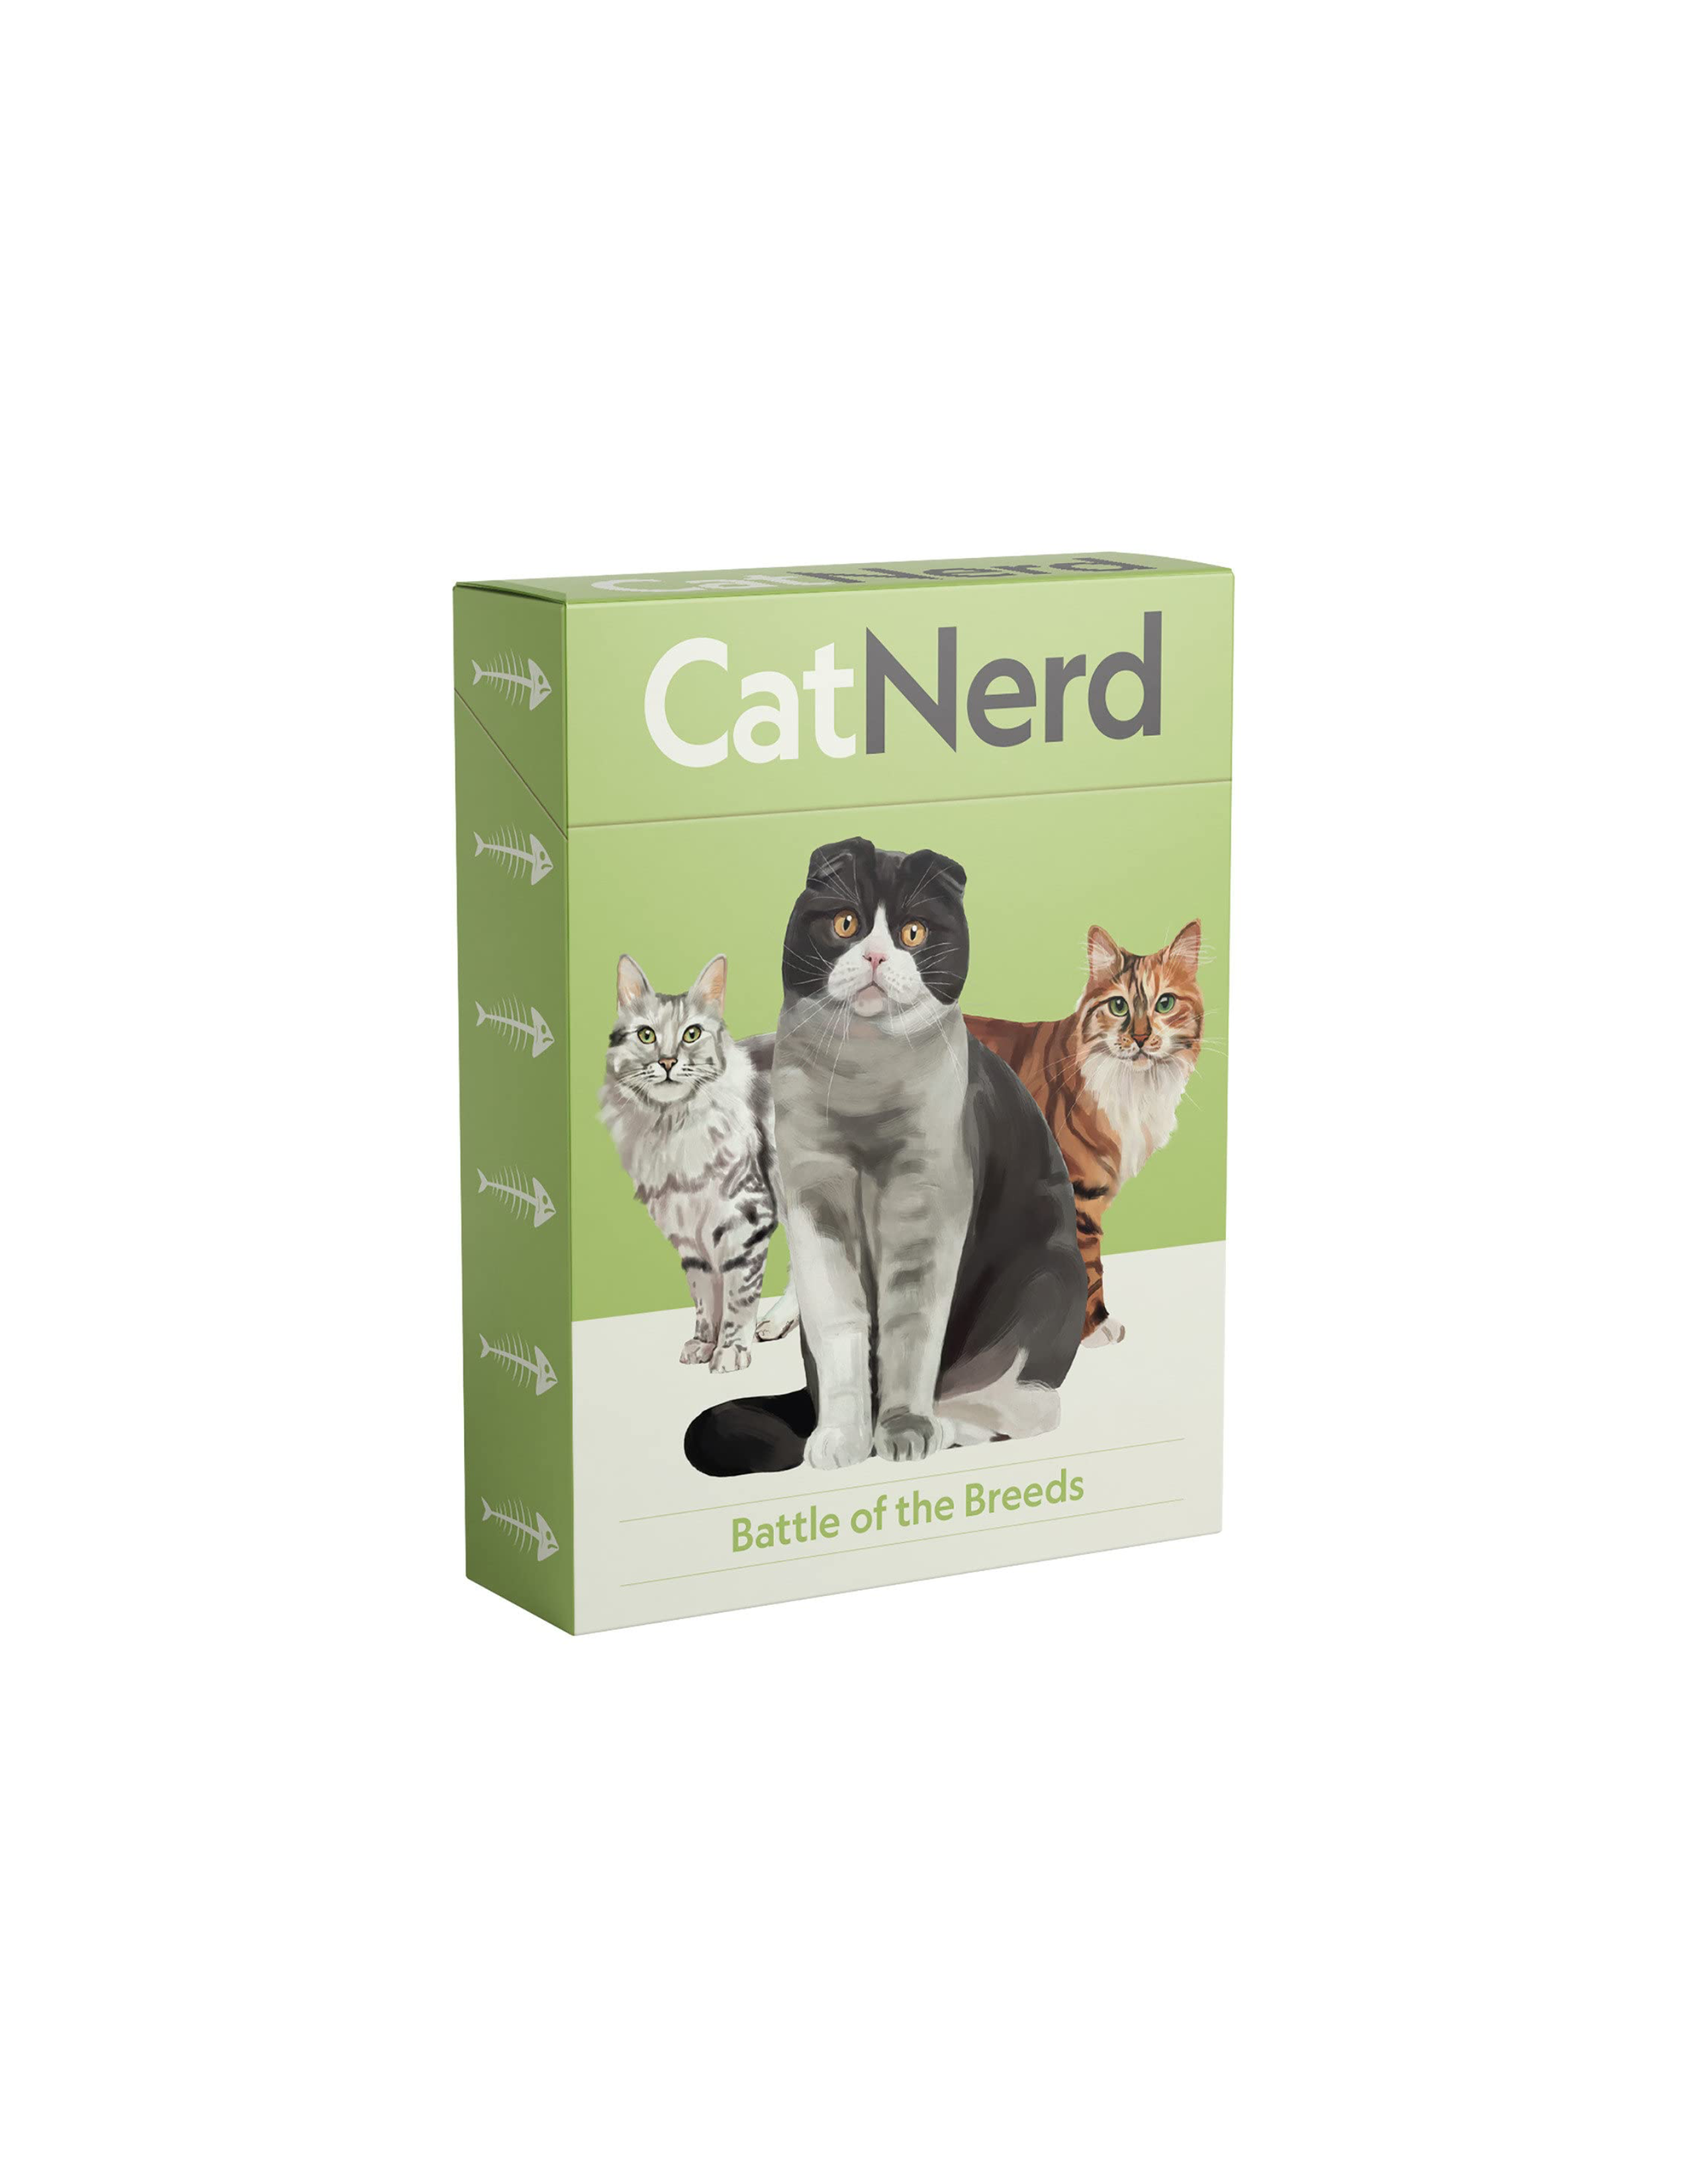 Cat Nerd: Battle of the Breeds